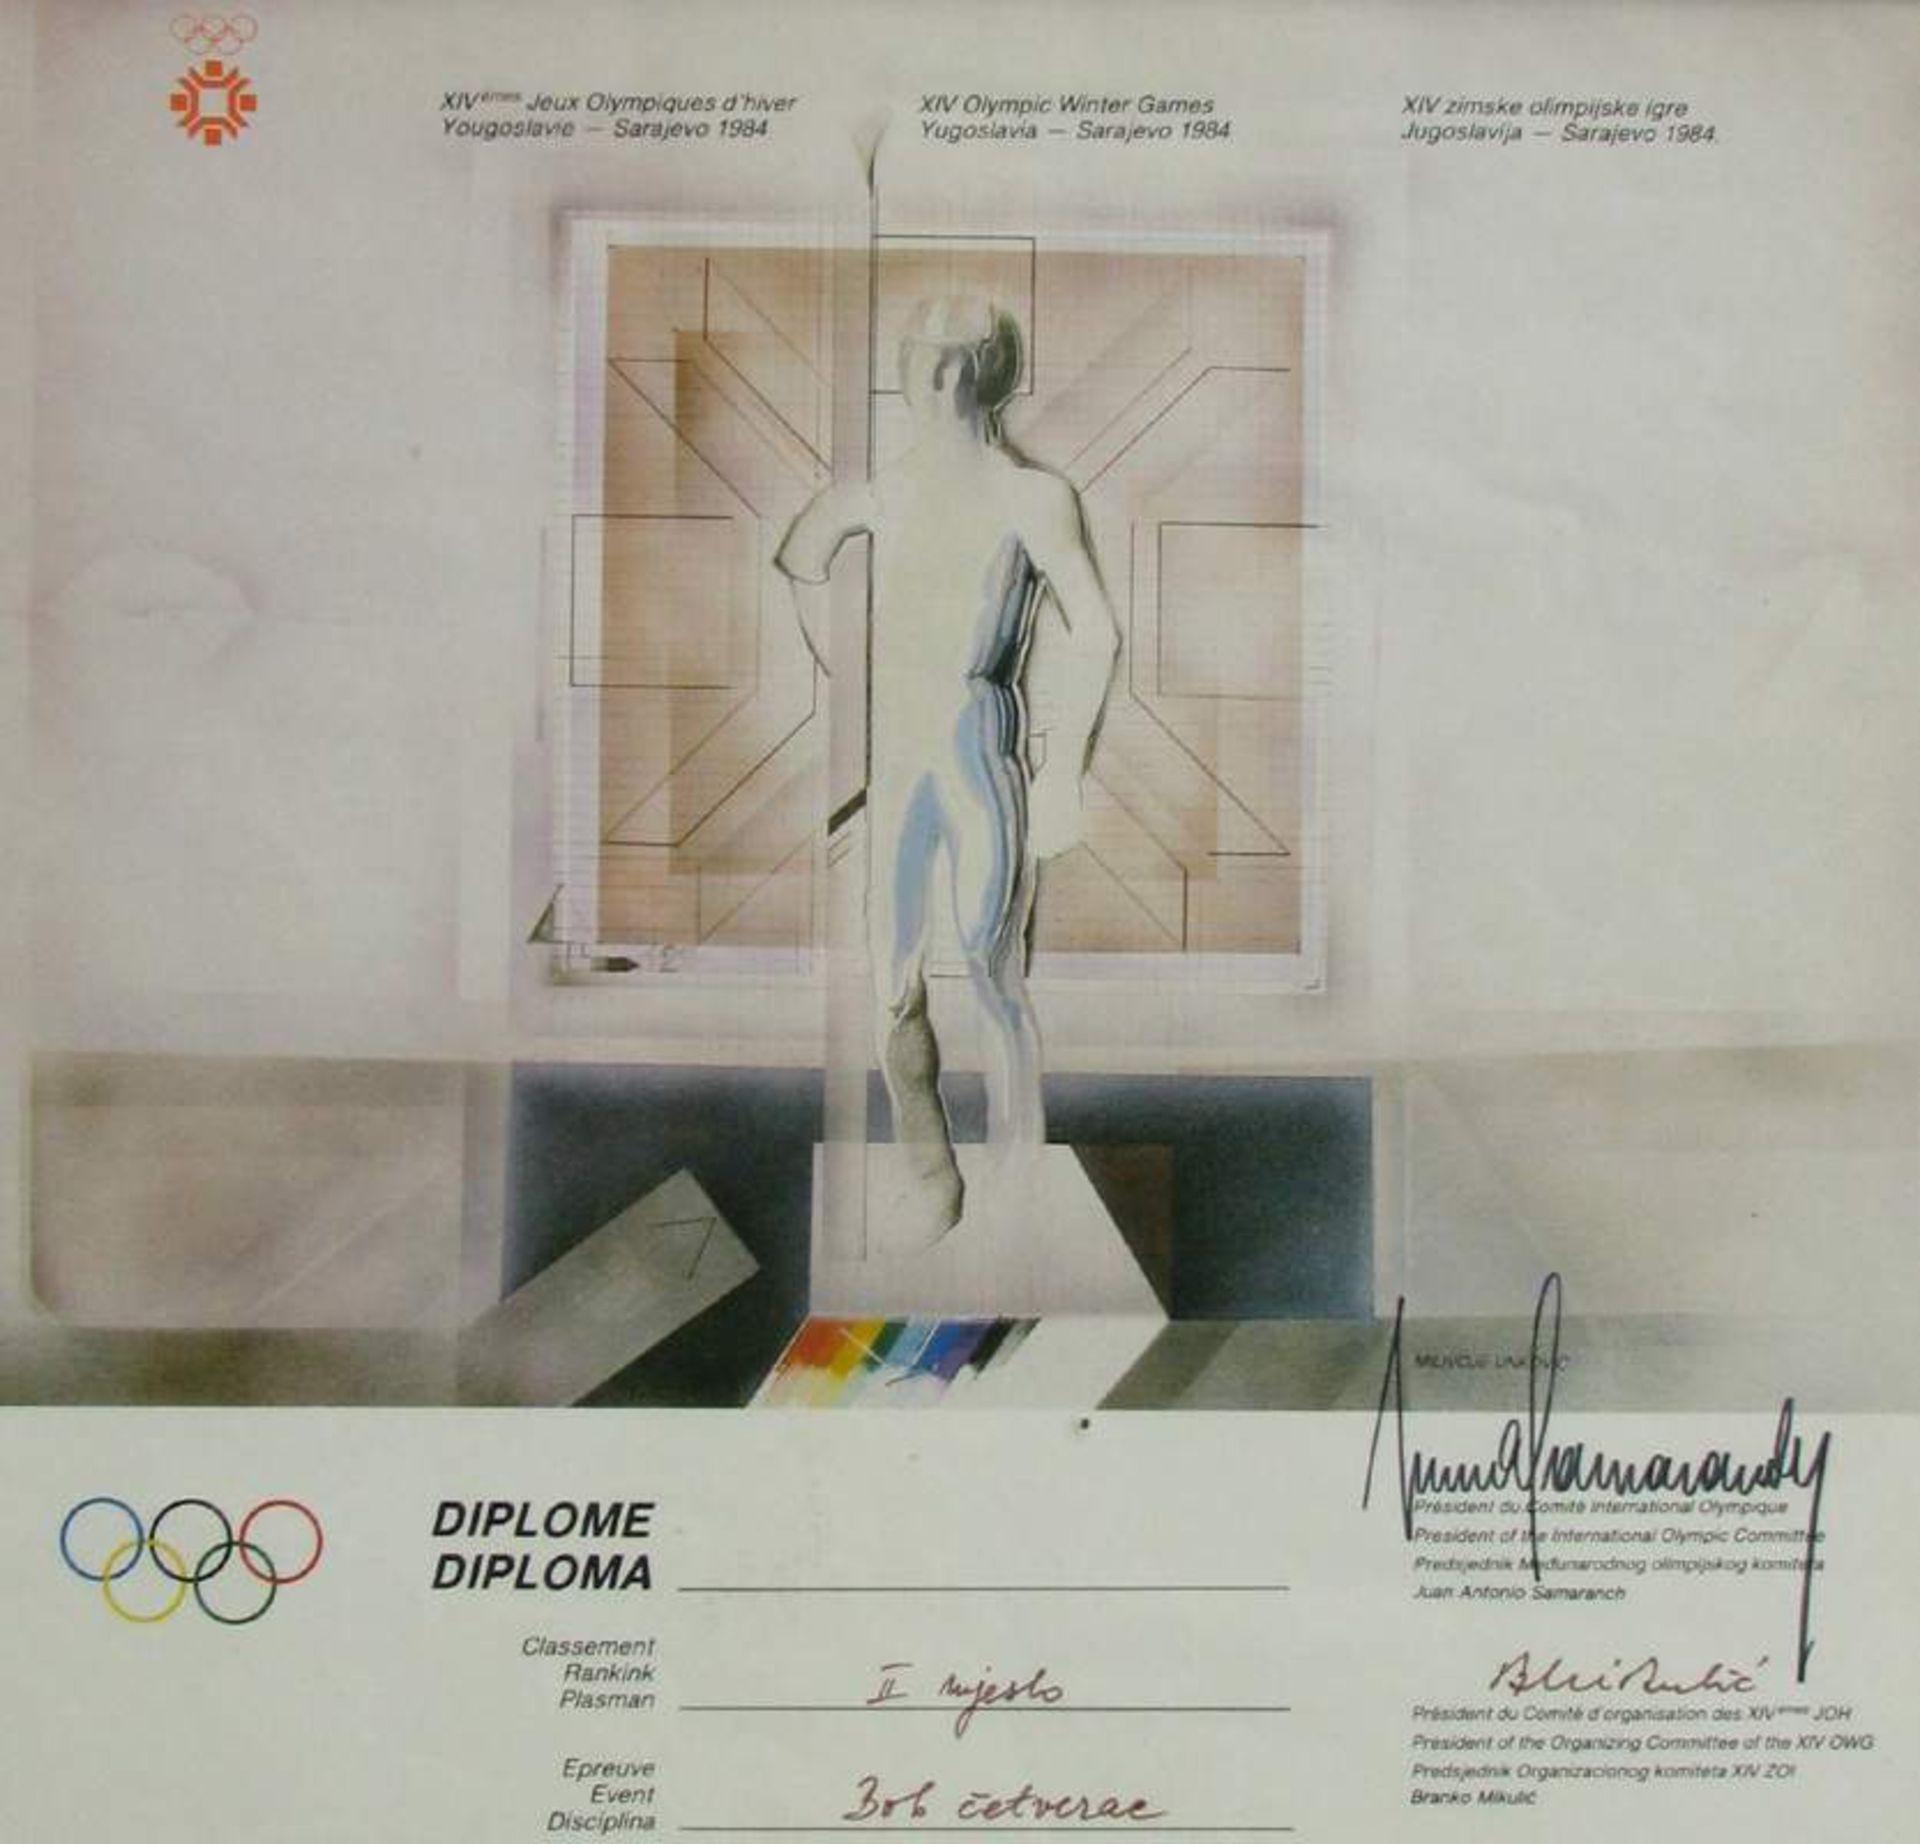 Olympic Games Innsbruck 1984 Medal Winner diploma - Winner diploma from the XIV. Olympic Winter